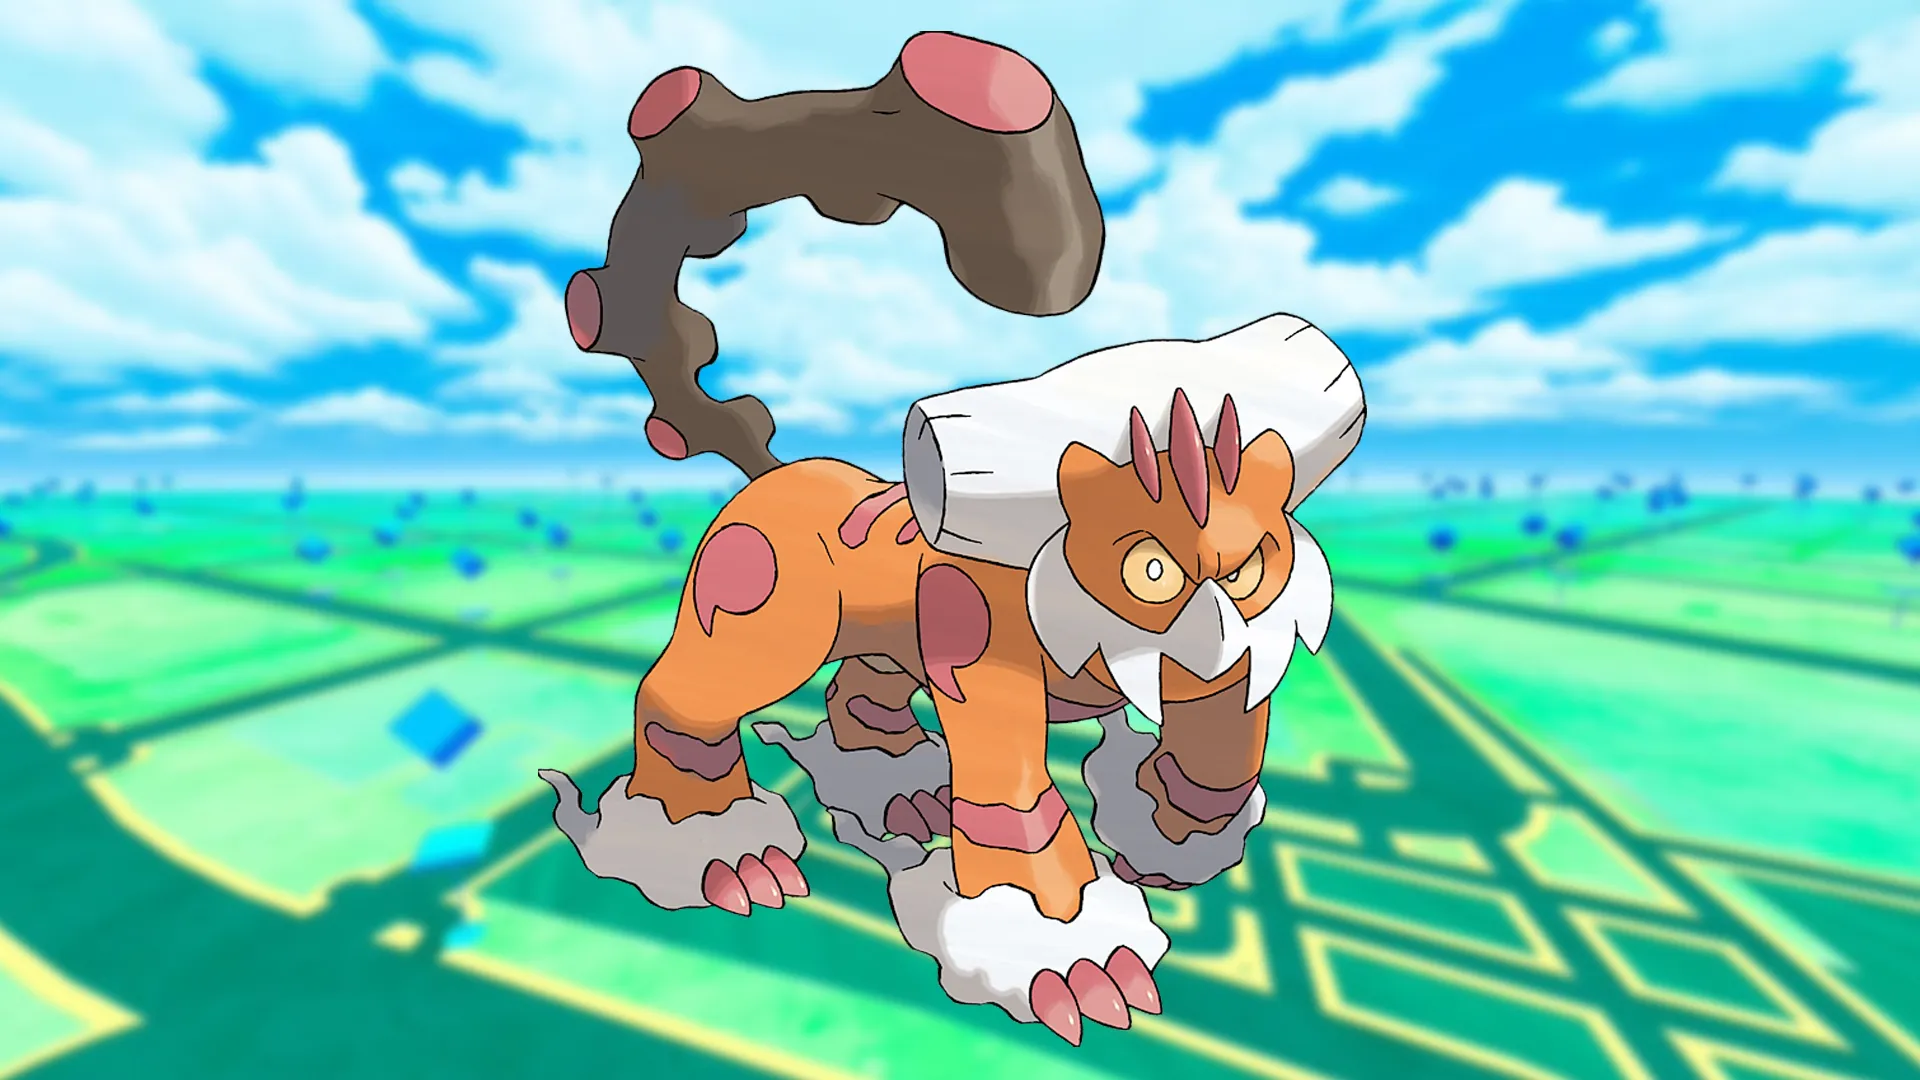 Landorus Therian forme Pokémon Go